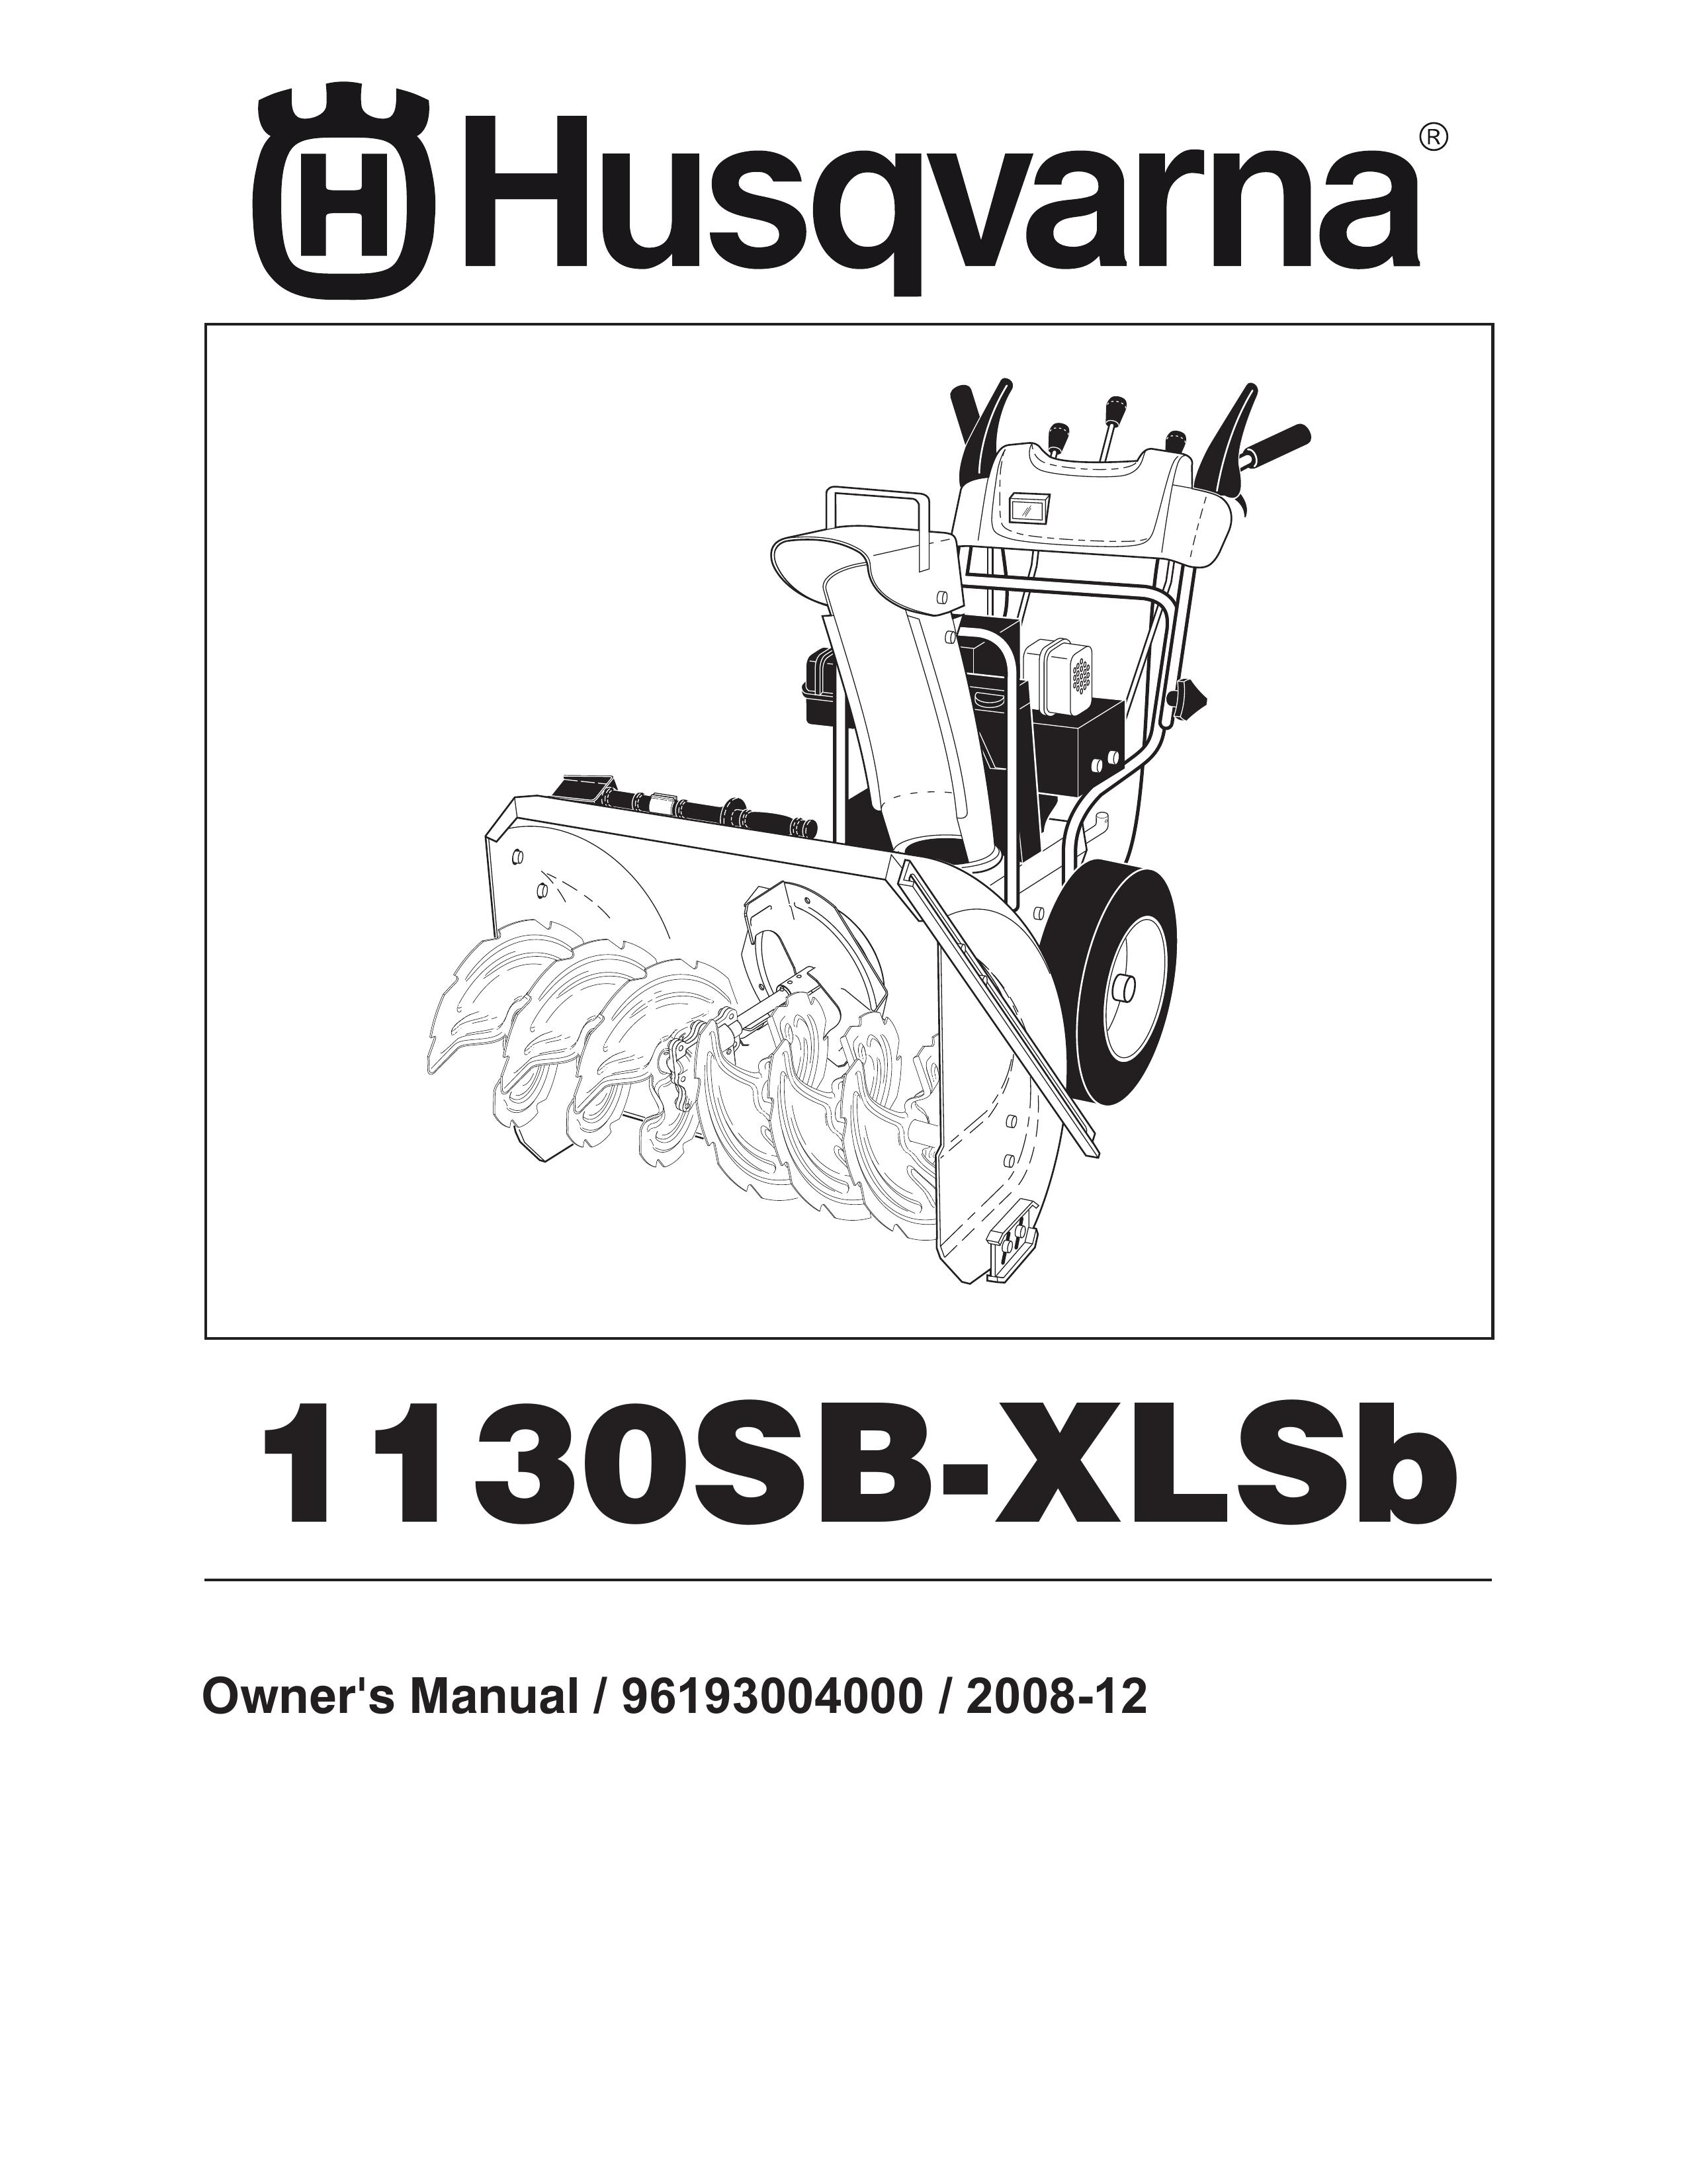 Husqvarna 1130SB-XLSB Snow Blower User Manual